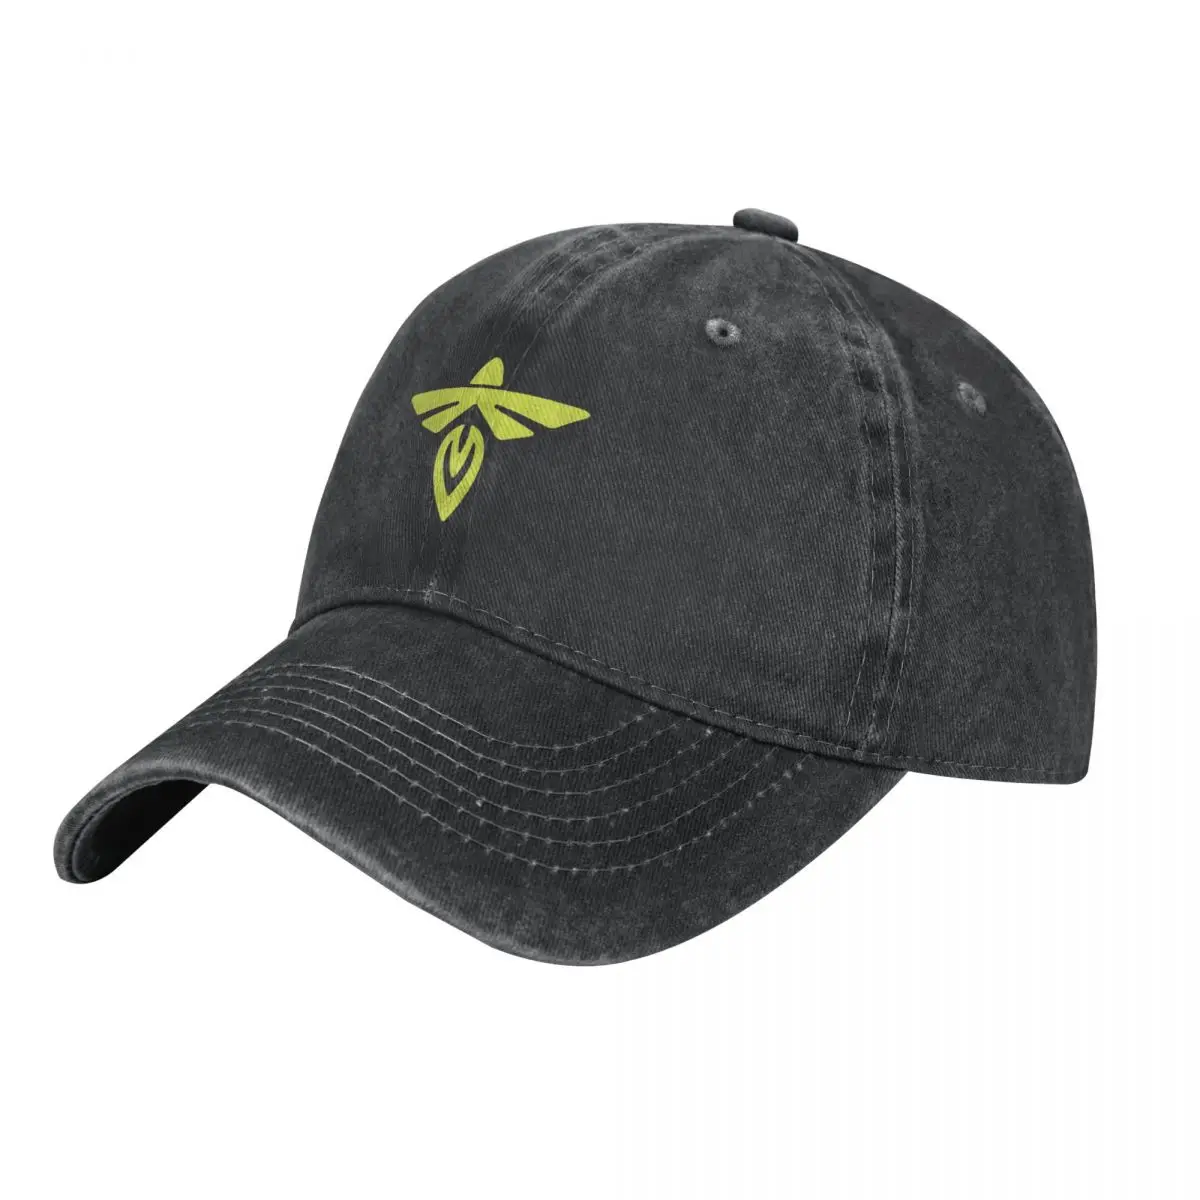 

Ковбойская шляпа с логотипом авиакосмической компании Firefly, шляпы на заказ, западные шляпы, роскошная брендовая мужская кепка, Женская